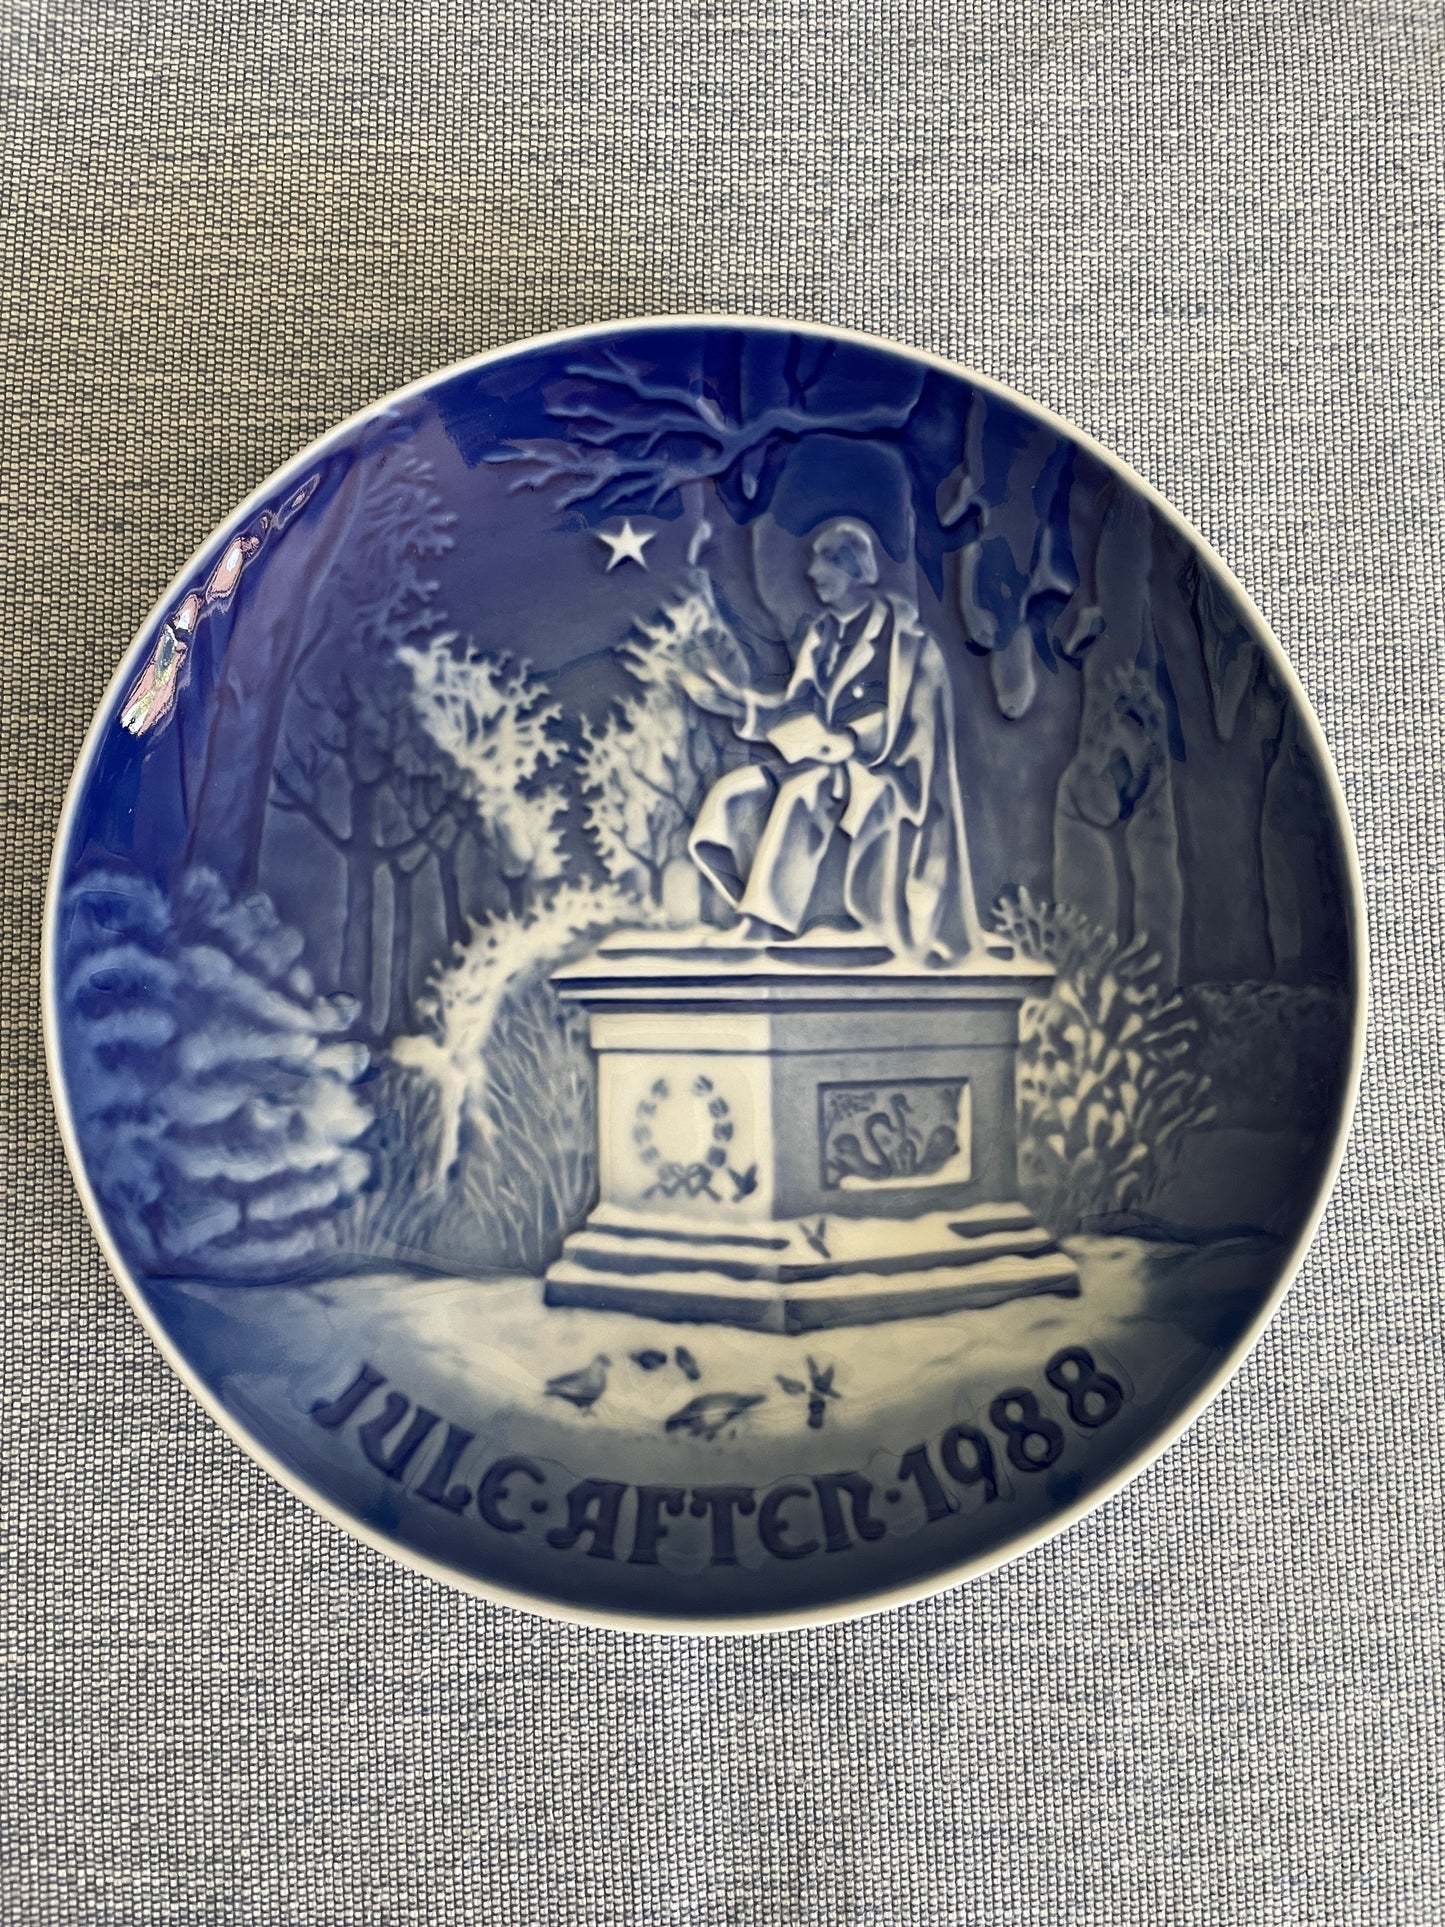 B&G Hans Christian Andersen in the Kings Garden Plate